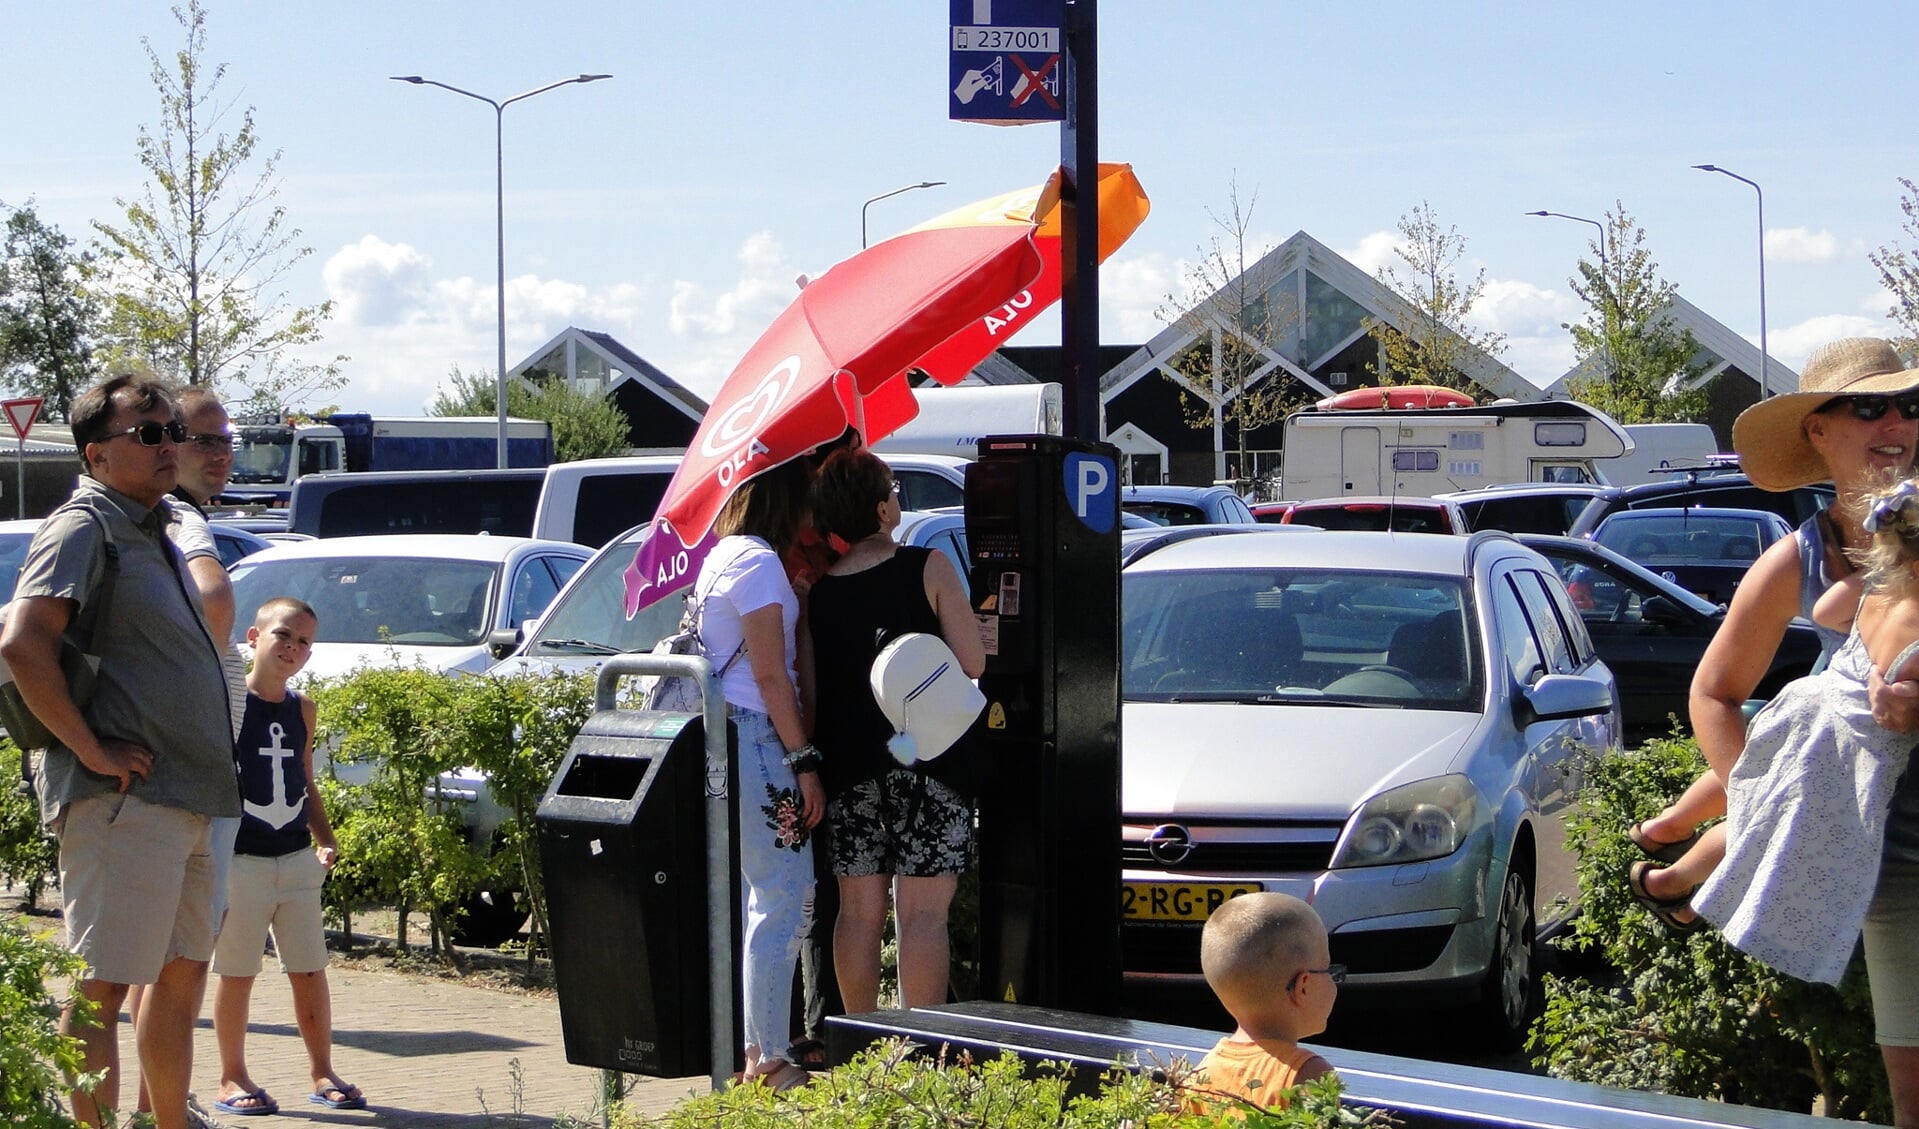 Met het extreem warme weer van de afgelopen dagen hebben ook de parkeerautomaten een parasol nodig voor wat verkoeling.  (Foto: Pep) 